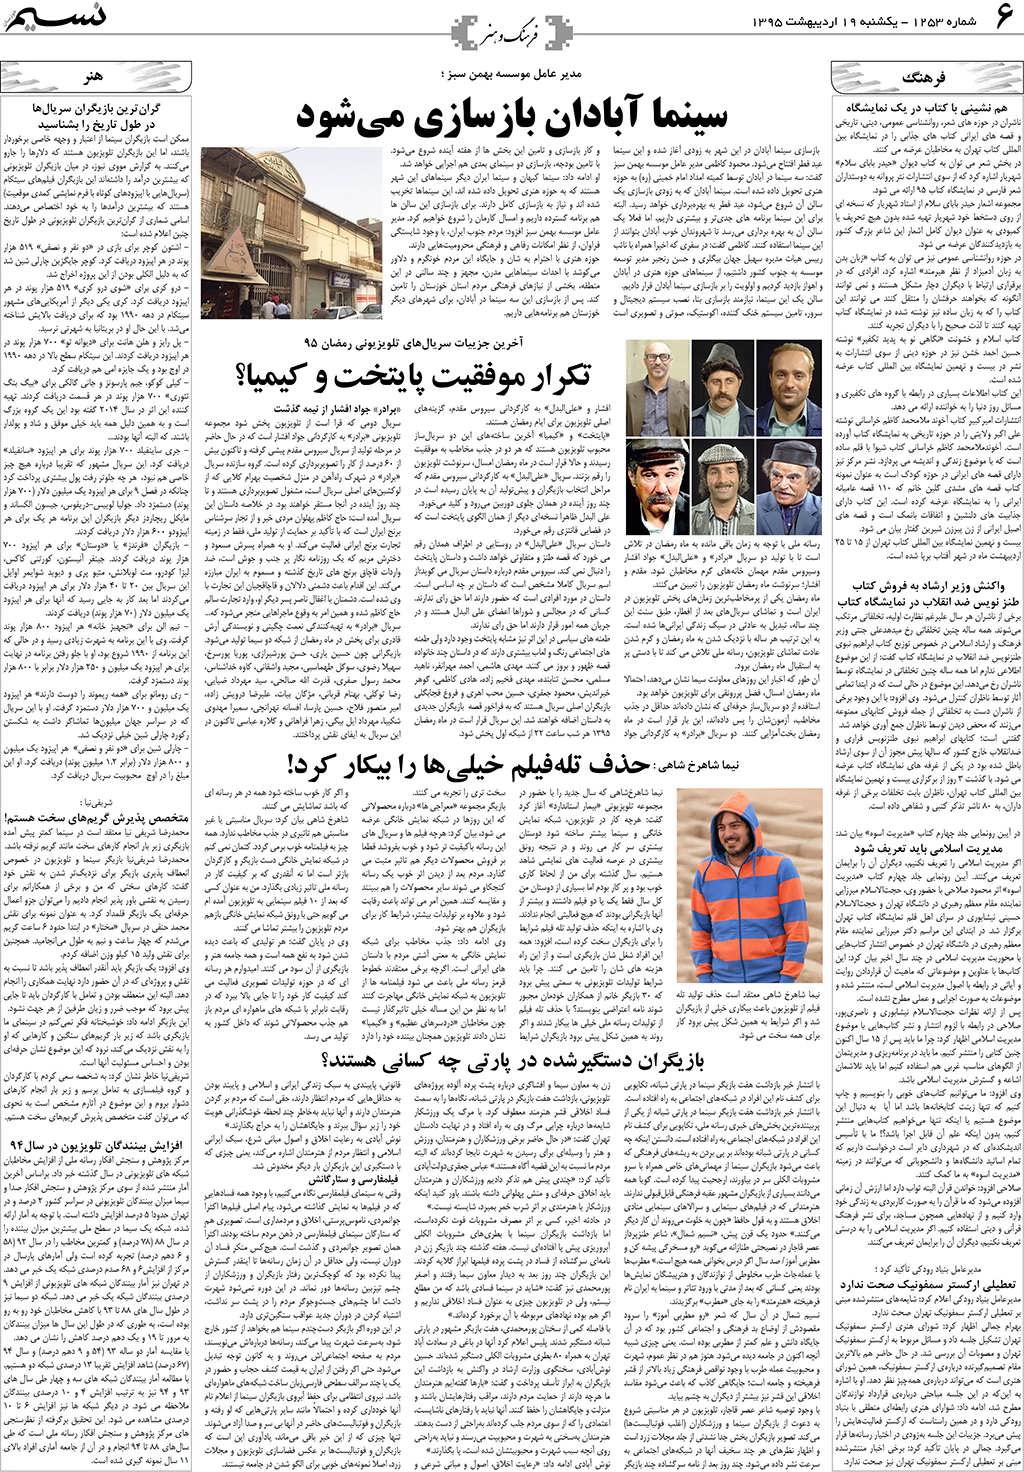 صفحه فرهنگ و هنر روزنامه نسیم شماره 1253